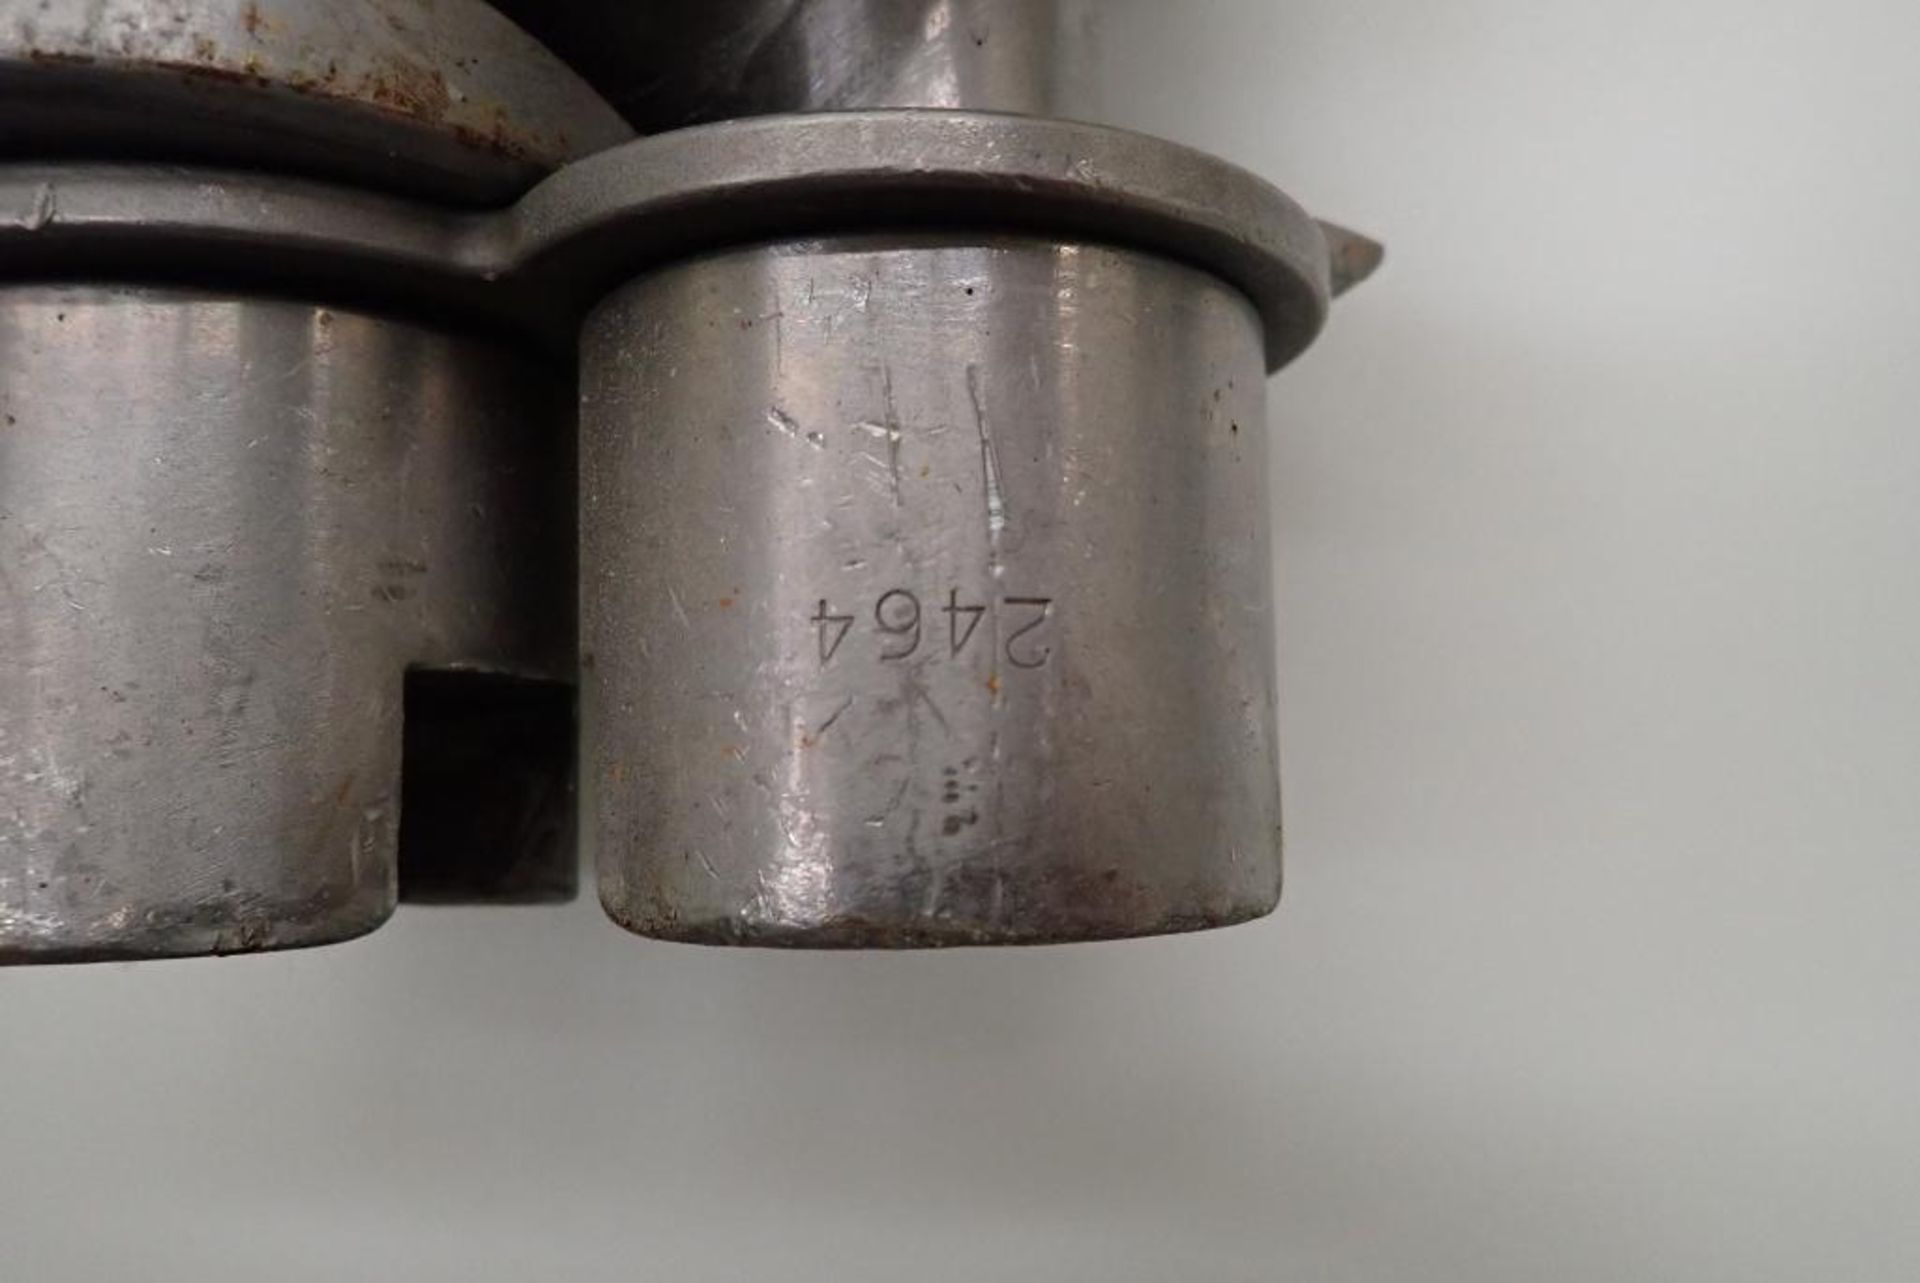 Reiser Vemag SS screws - Image 4 of 6